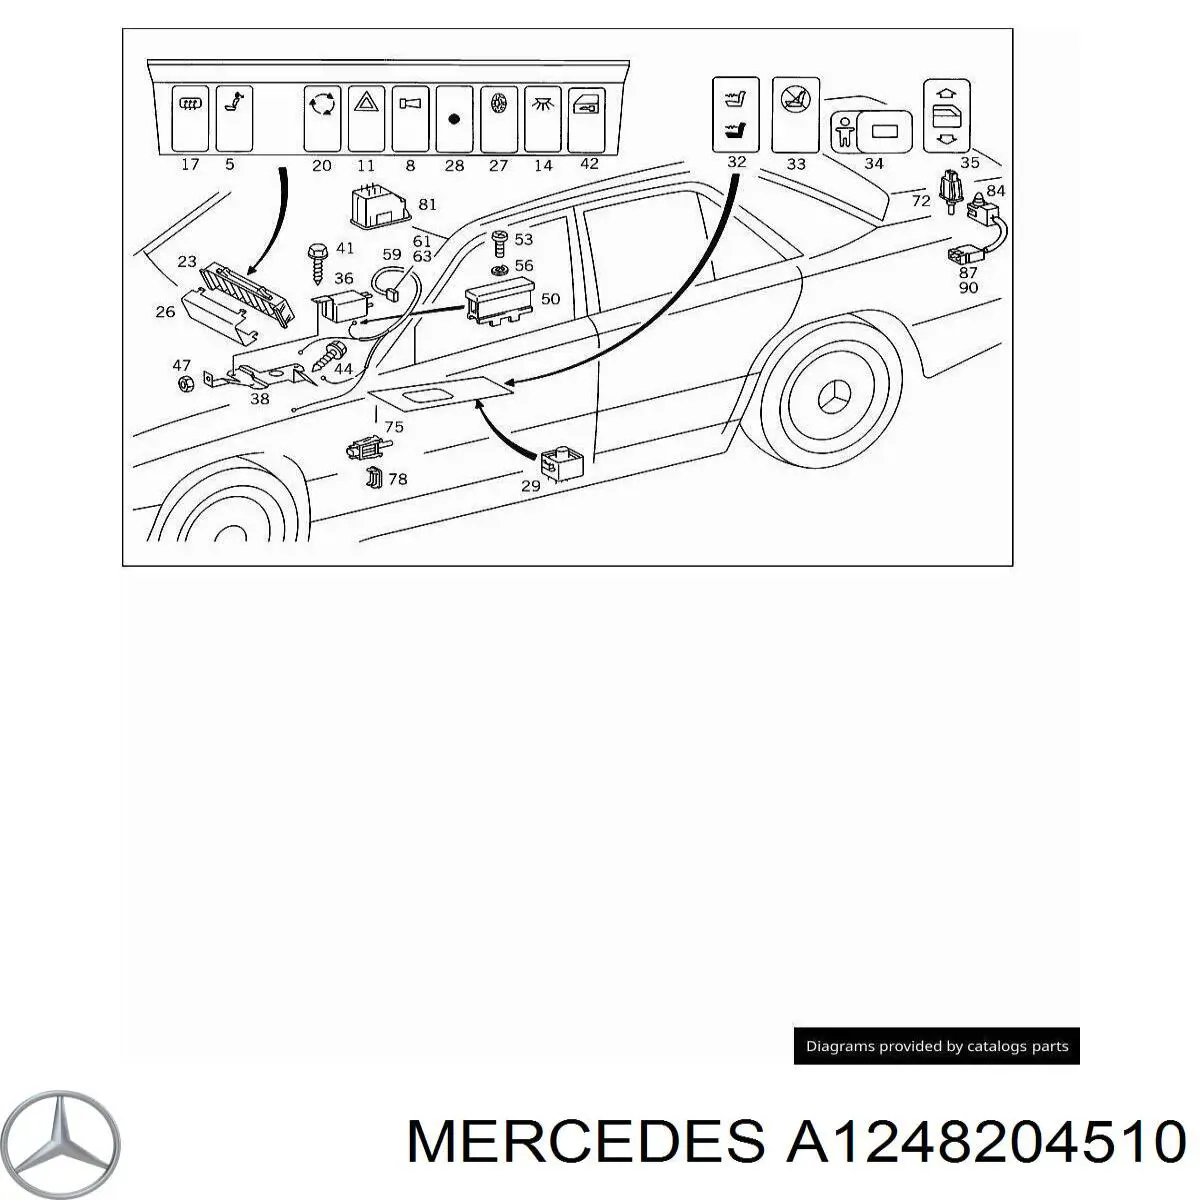 A1248204510 Mercedes botón de elevalunas delantero derecho